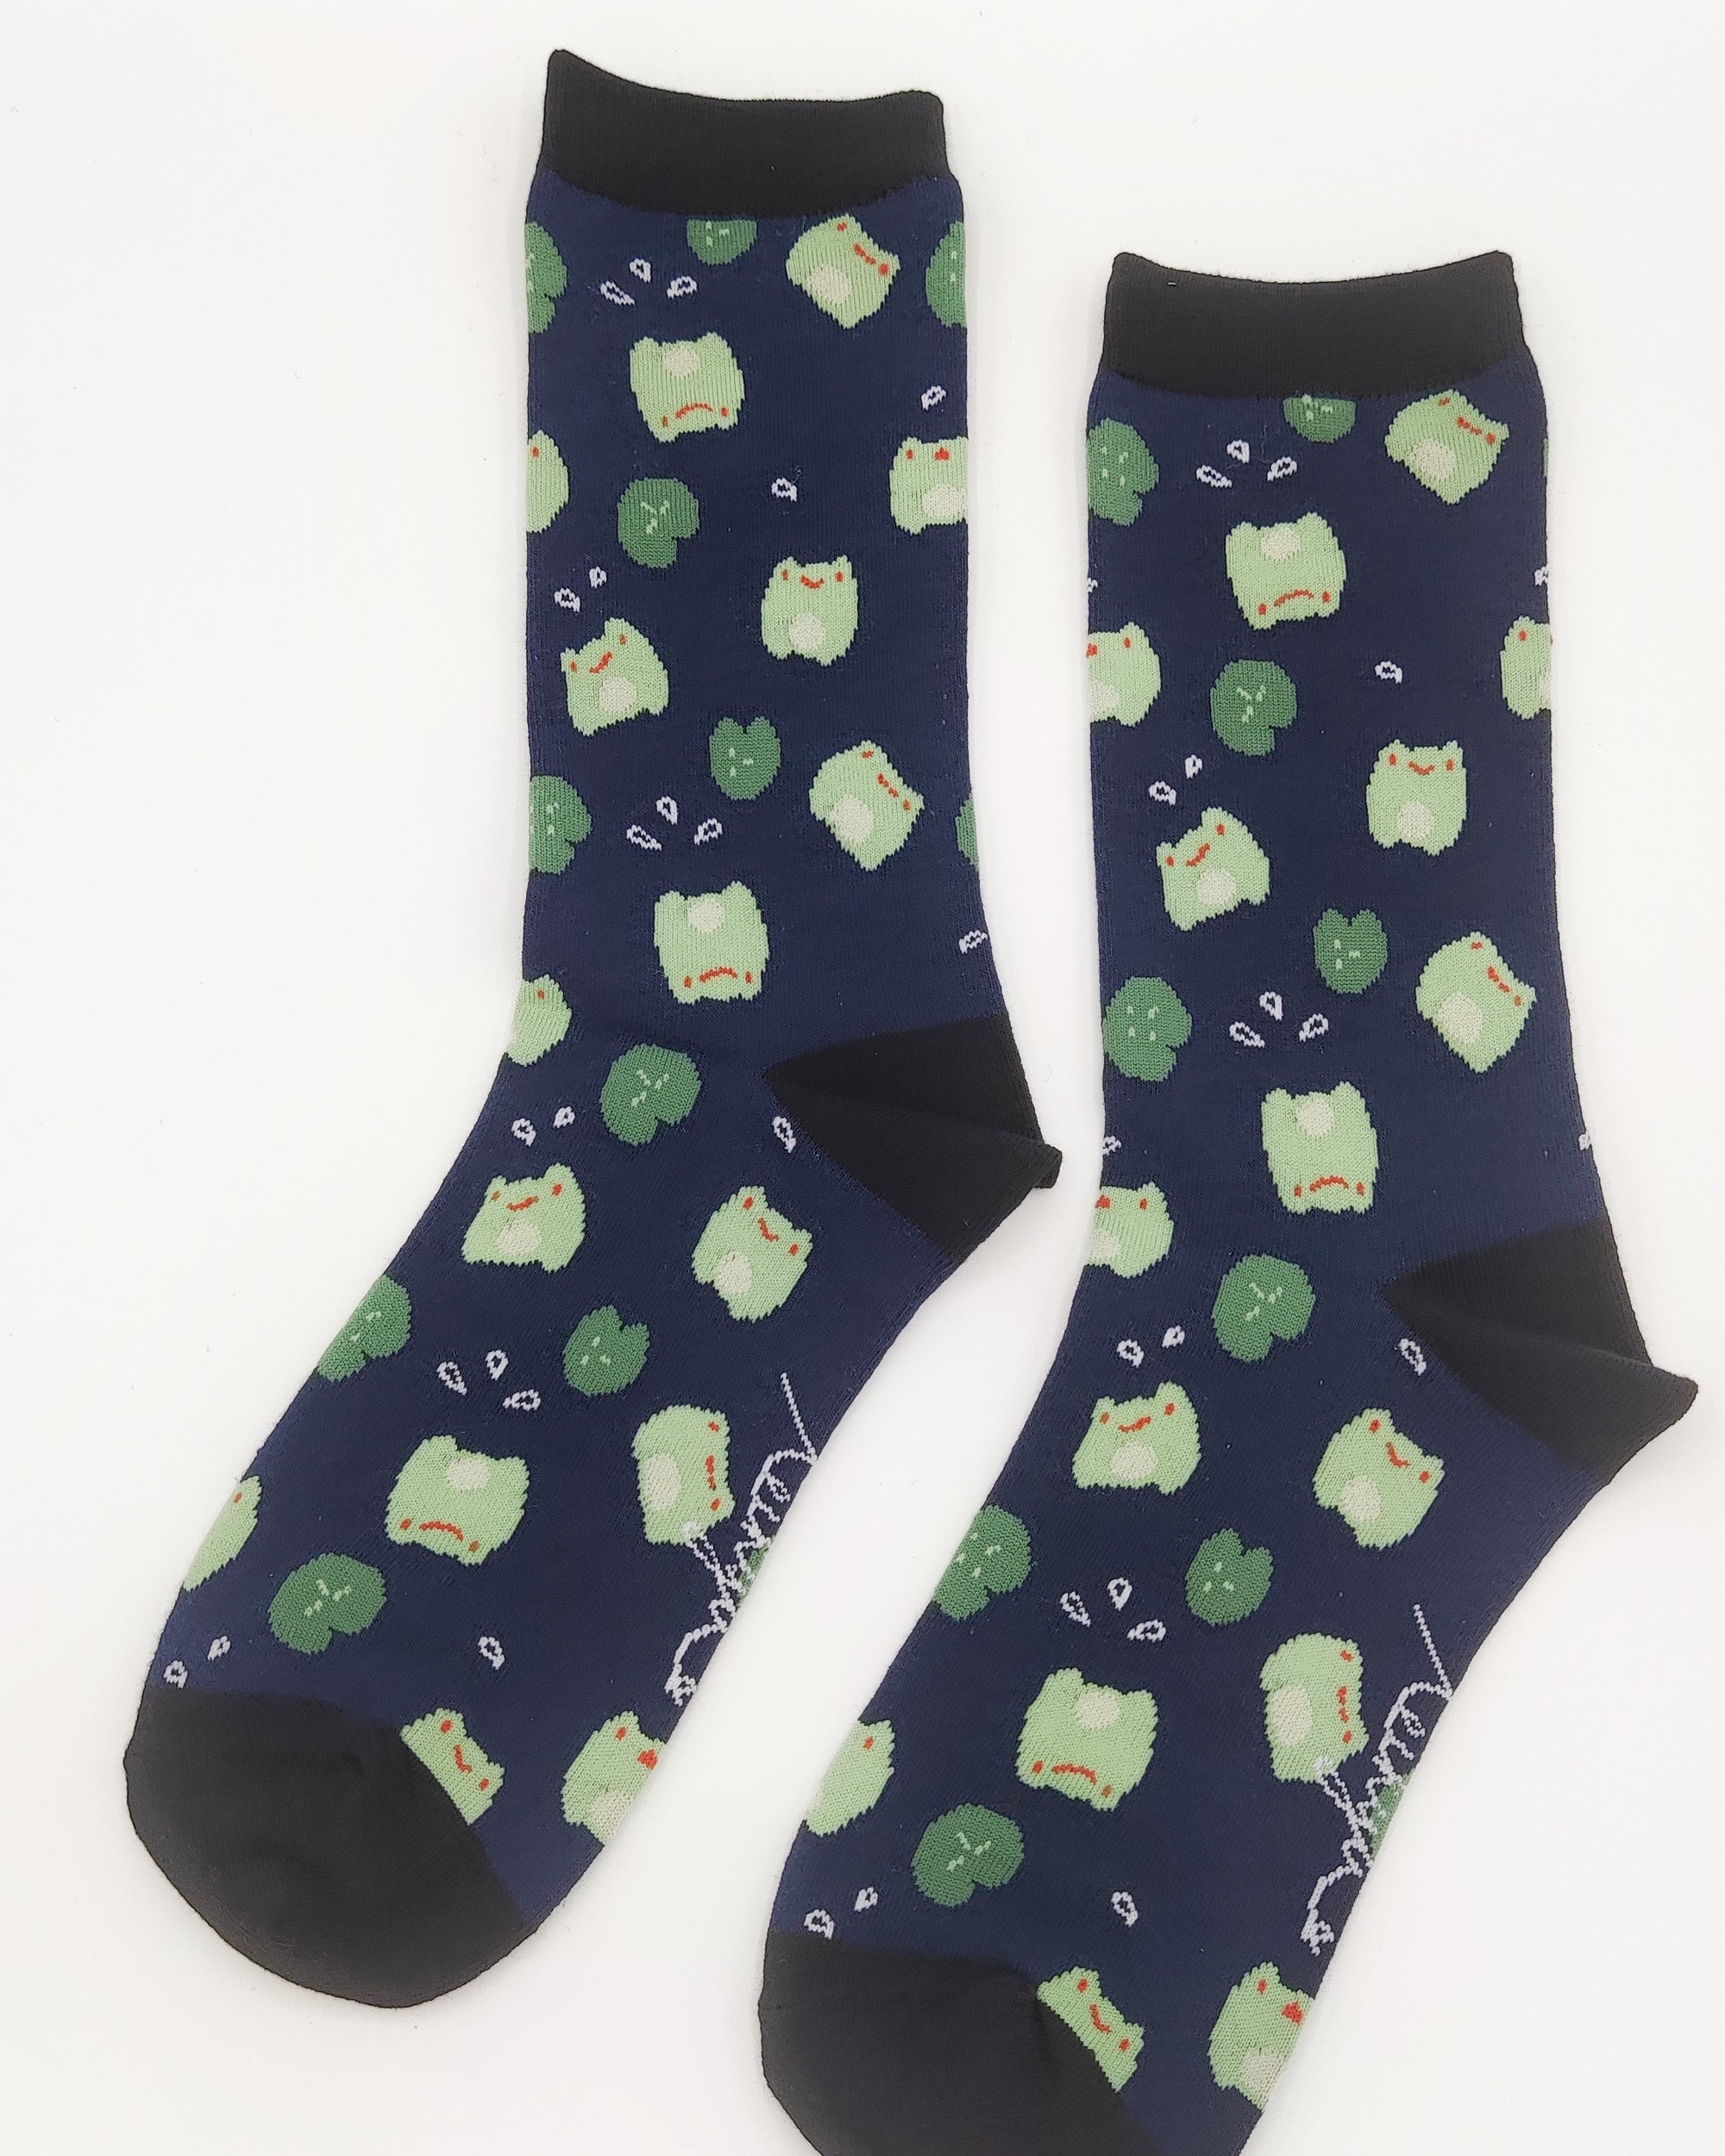 Froggie socks